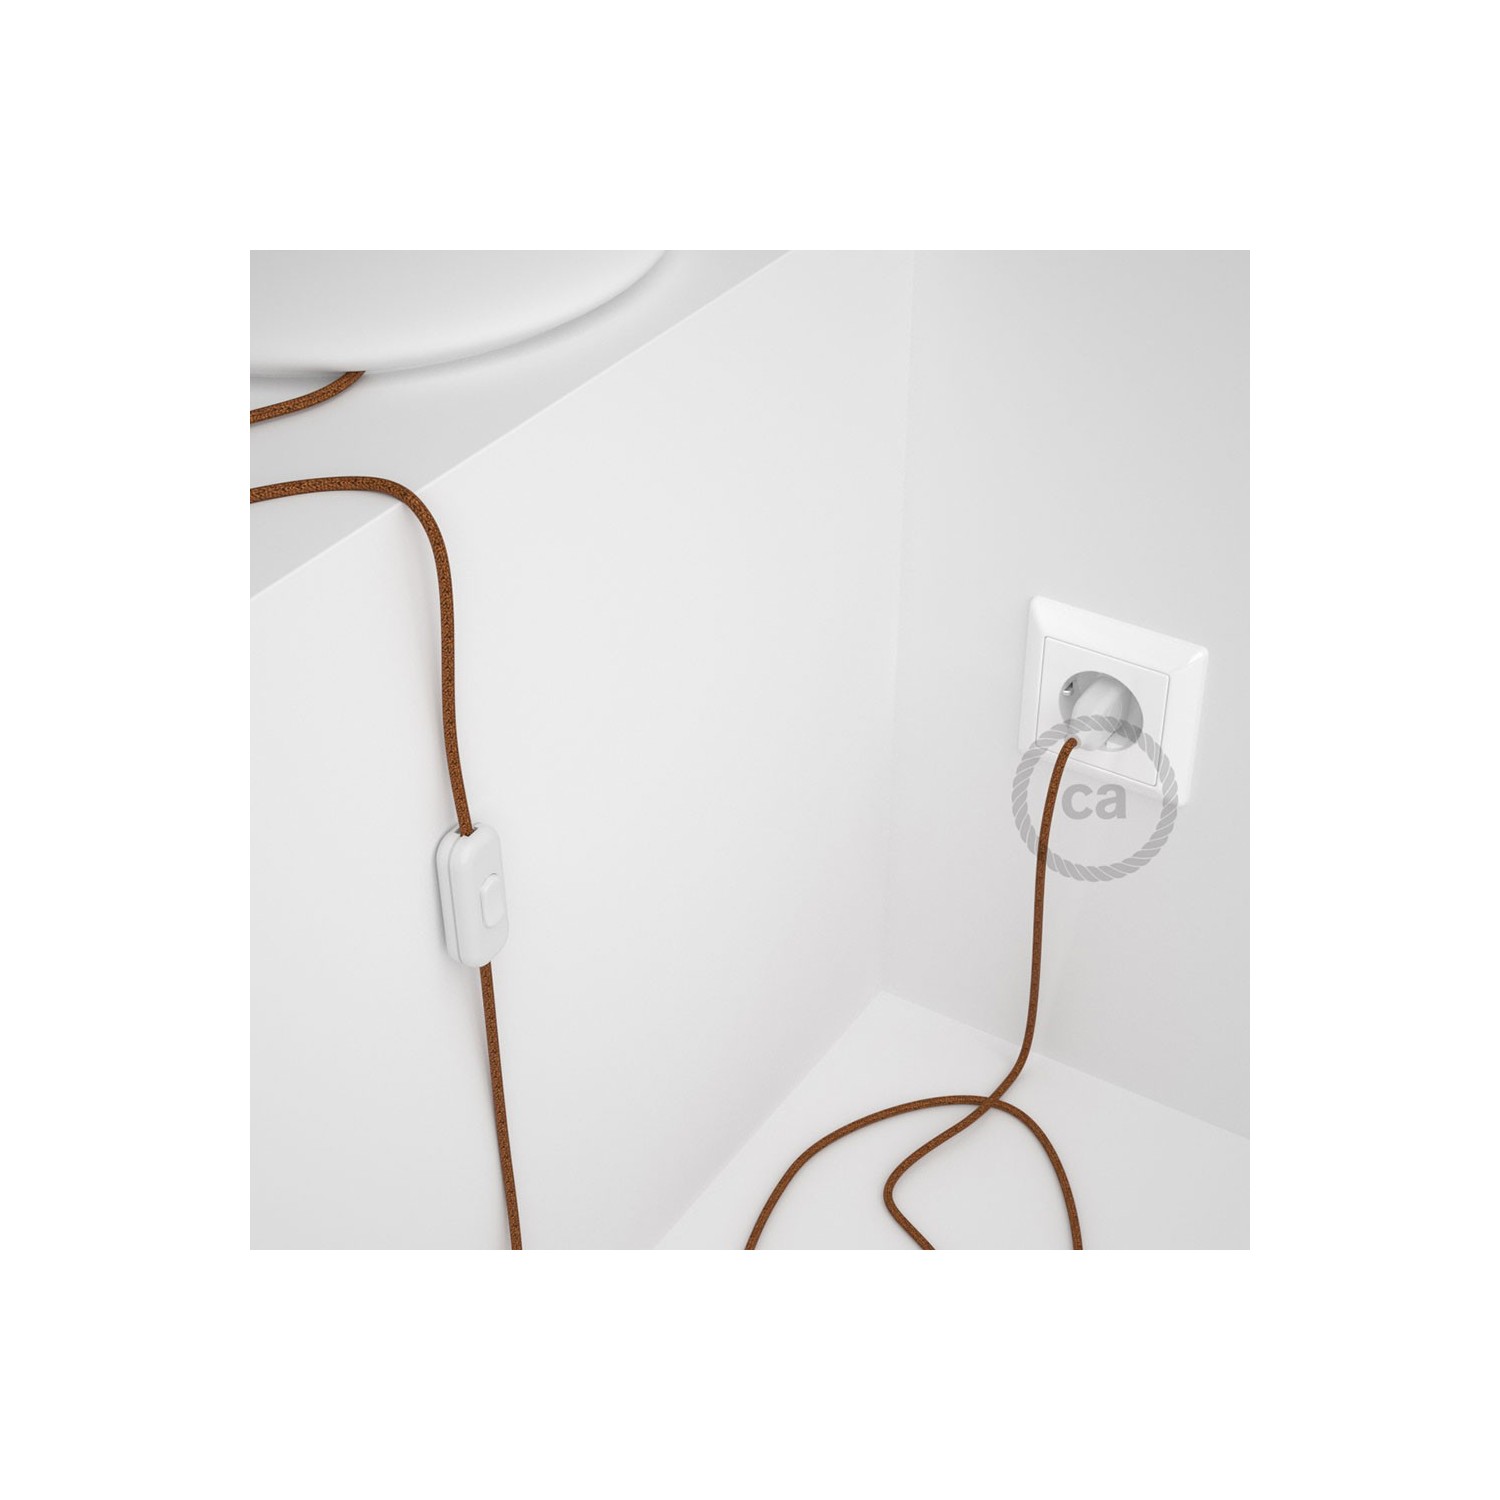 Cordon pour lampe, câble RL22 Effet Soie Paillettes Cuivre 1,80 m. Choisissez la couleur de la fiche et de l'interrupteur!